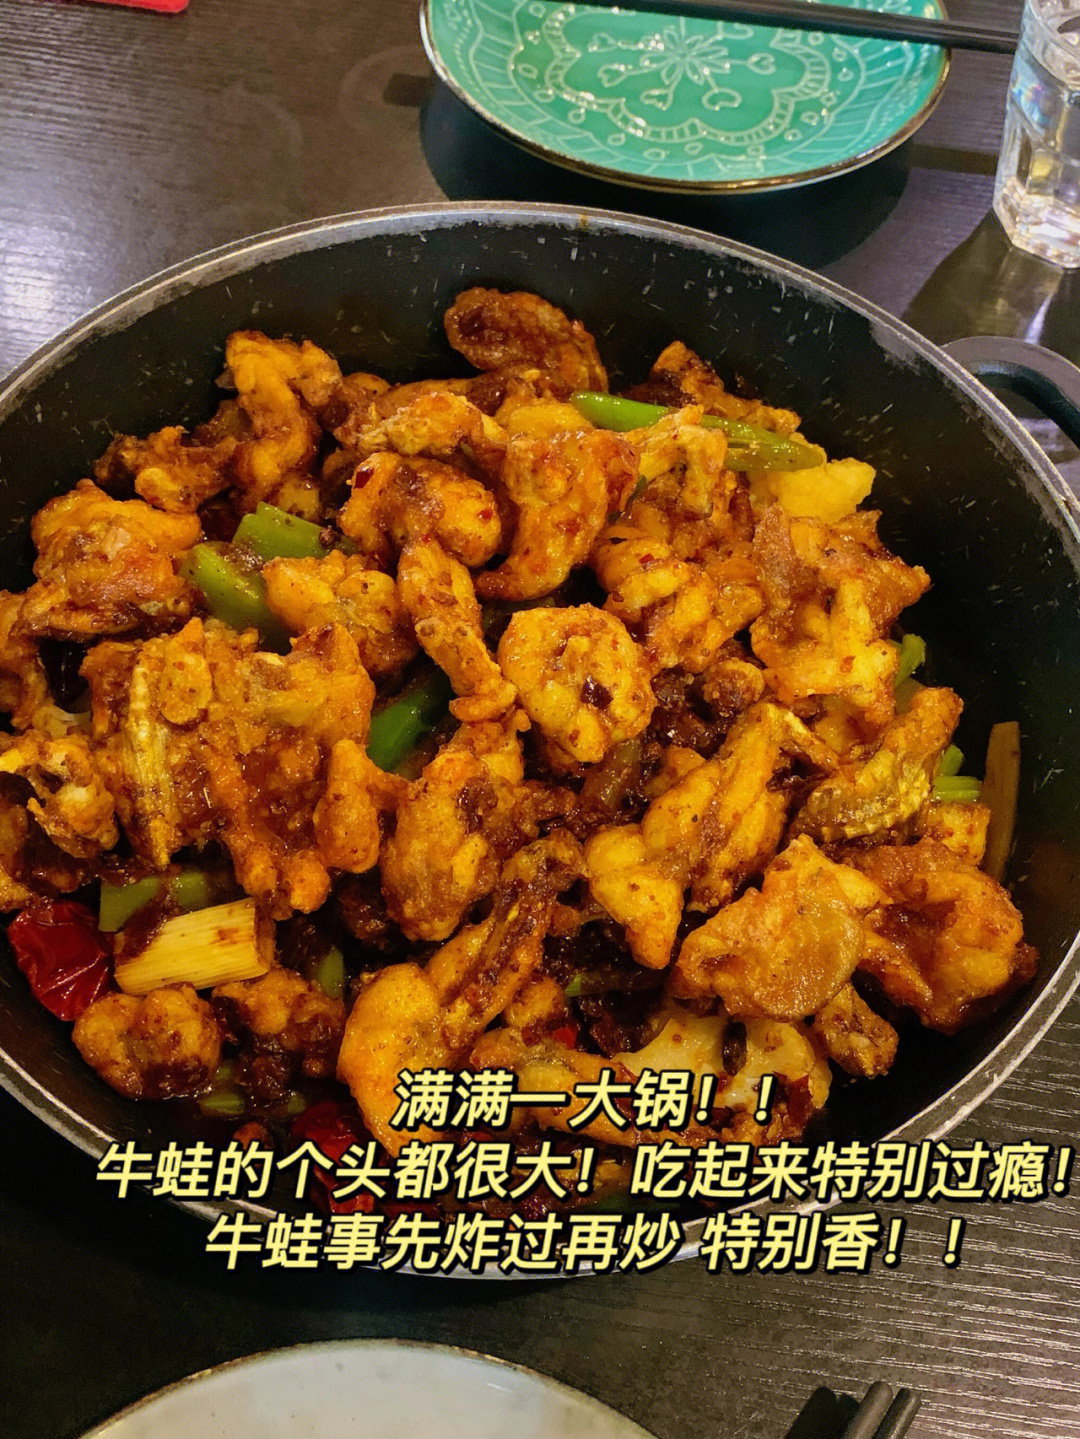 关于我在西安吃到了超好吃的干锅牛蛙这件事